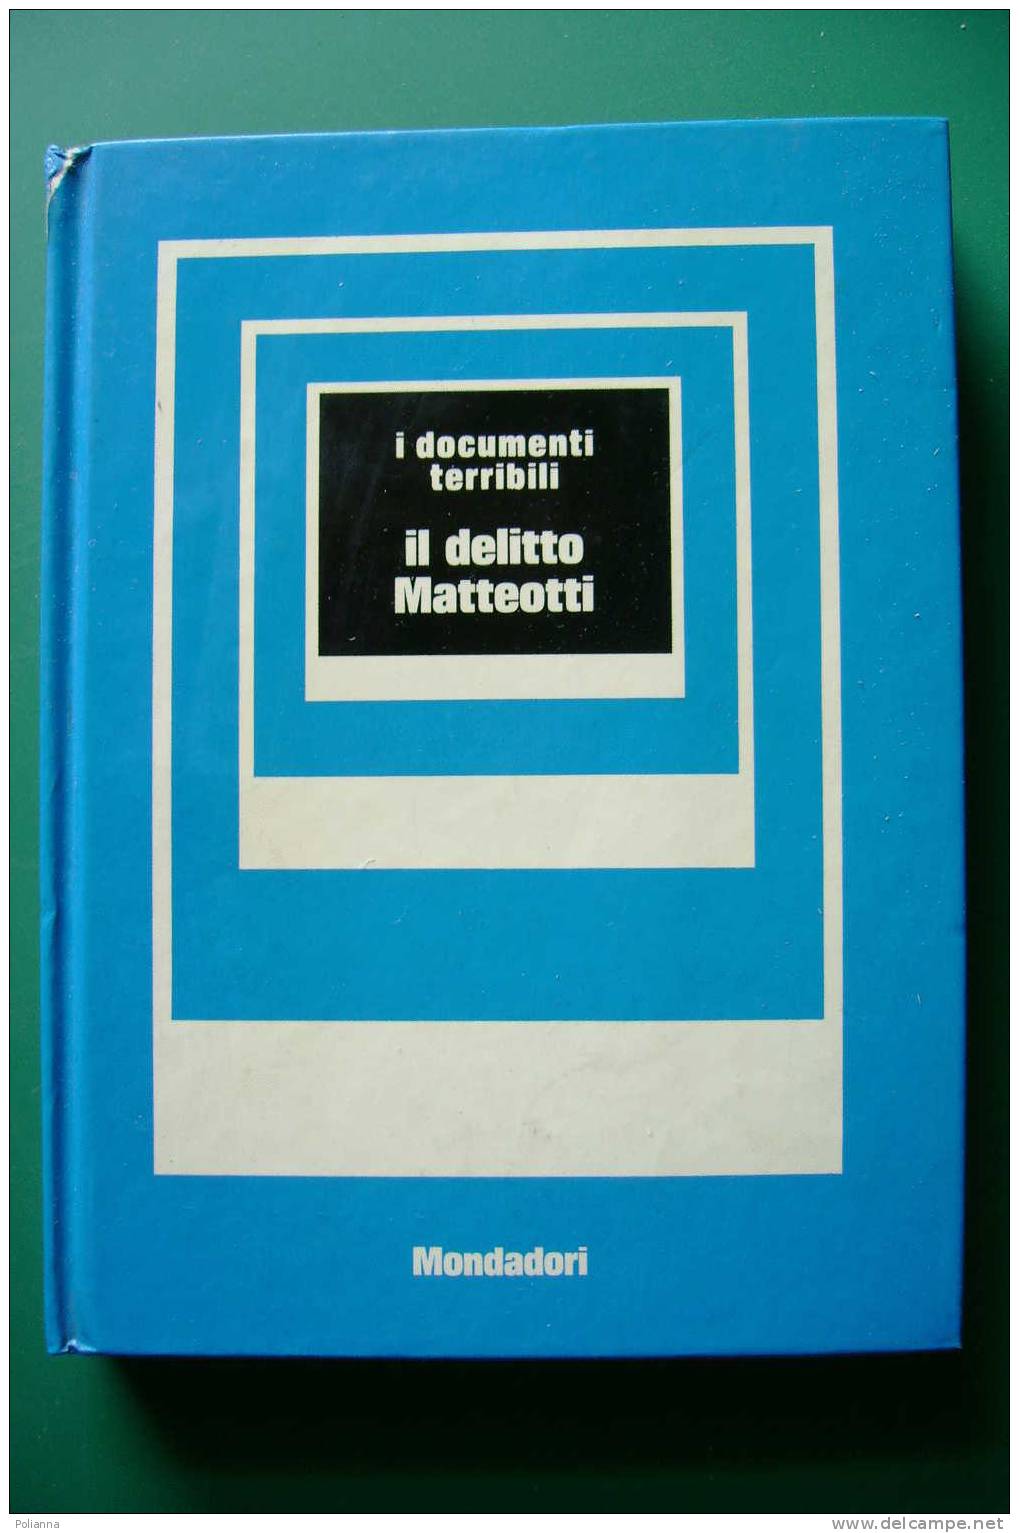 PDL/26 Documenti Terribili : IL DELITTO MATTEOTTI Mondadori 1973 - History, Biography, Philosophy